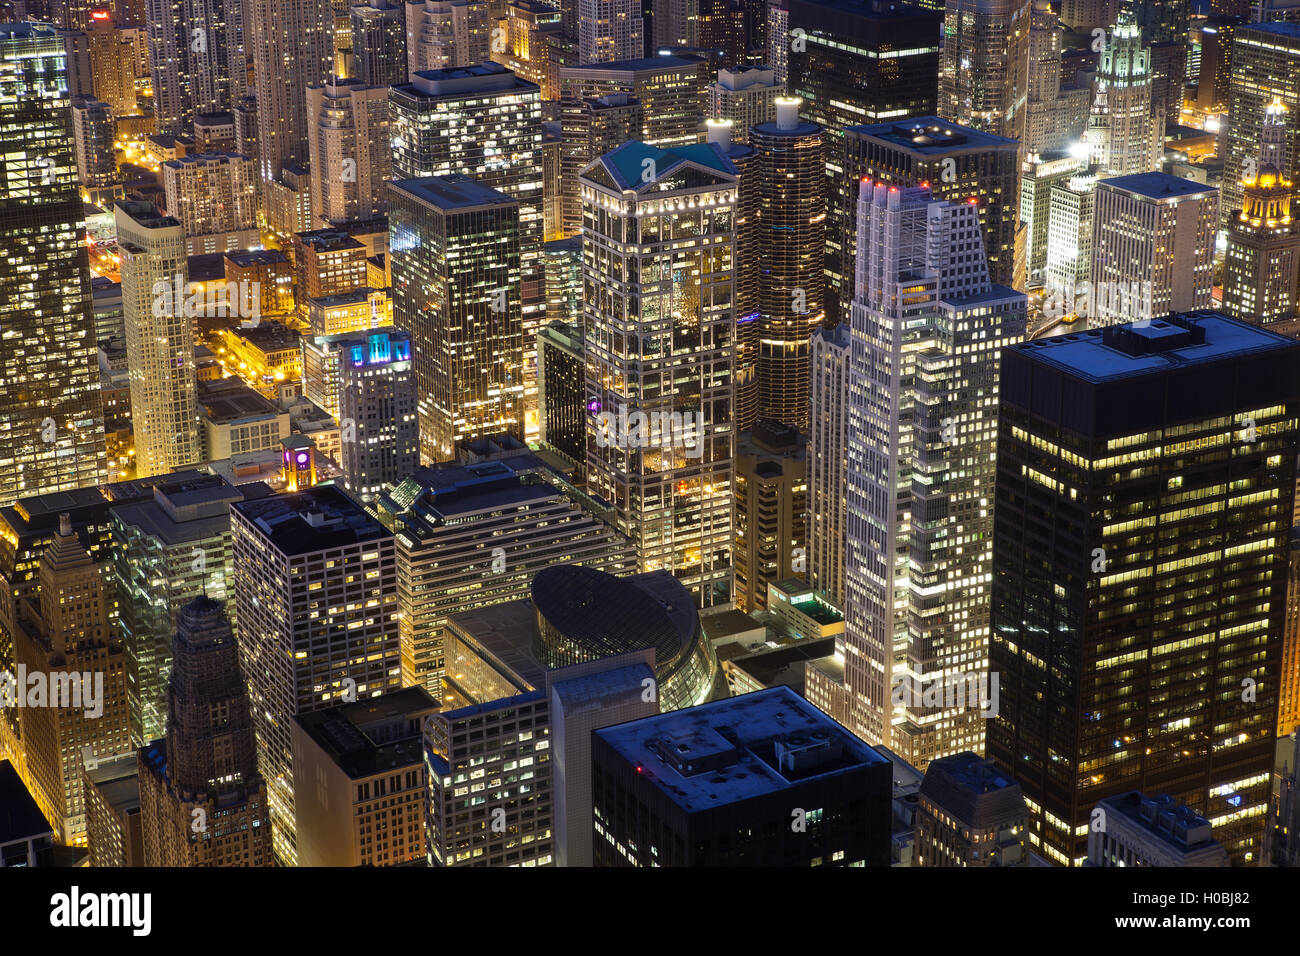 Chicago Architecture.Cierre la imagen arriba de los edificios del centro de Chicago en la noche. Foto de stock